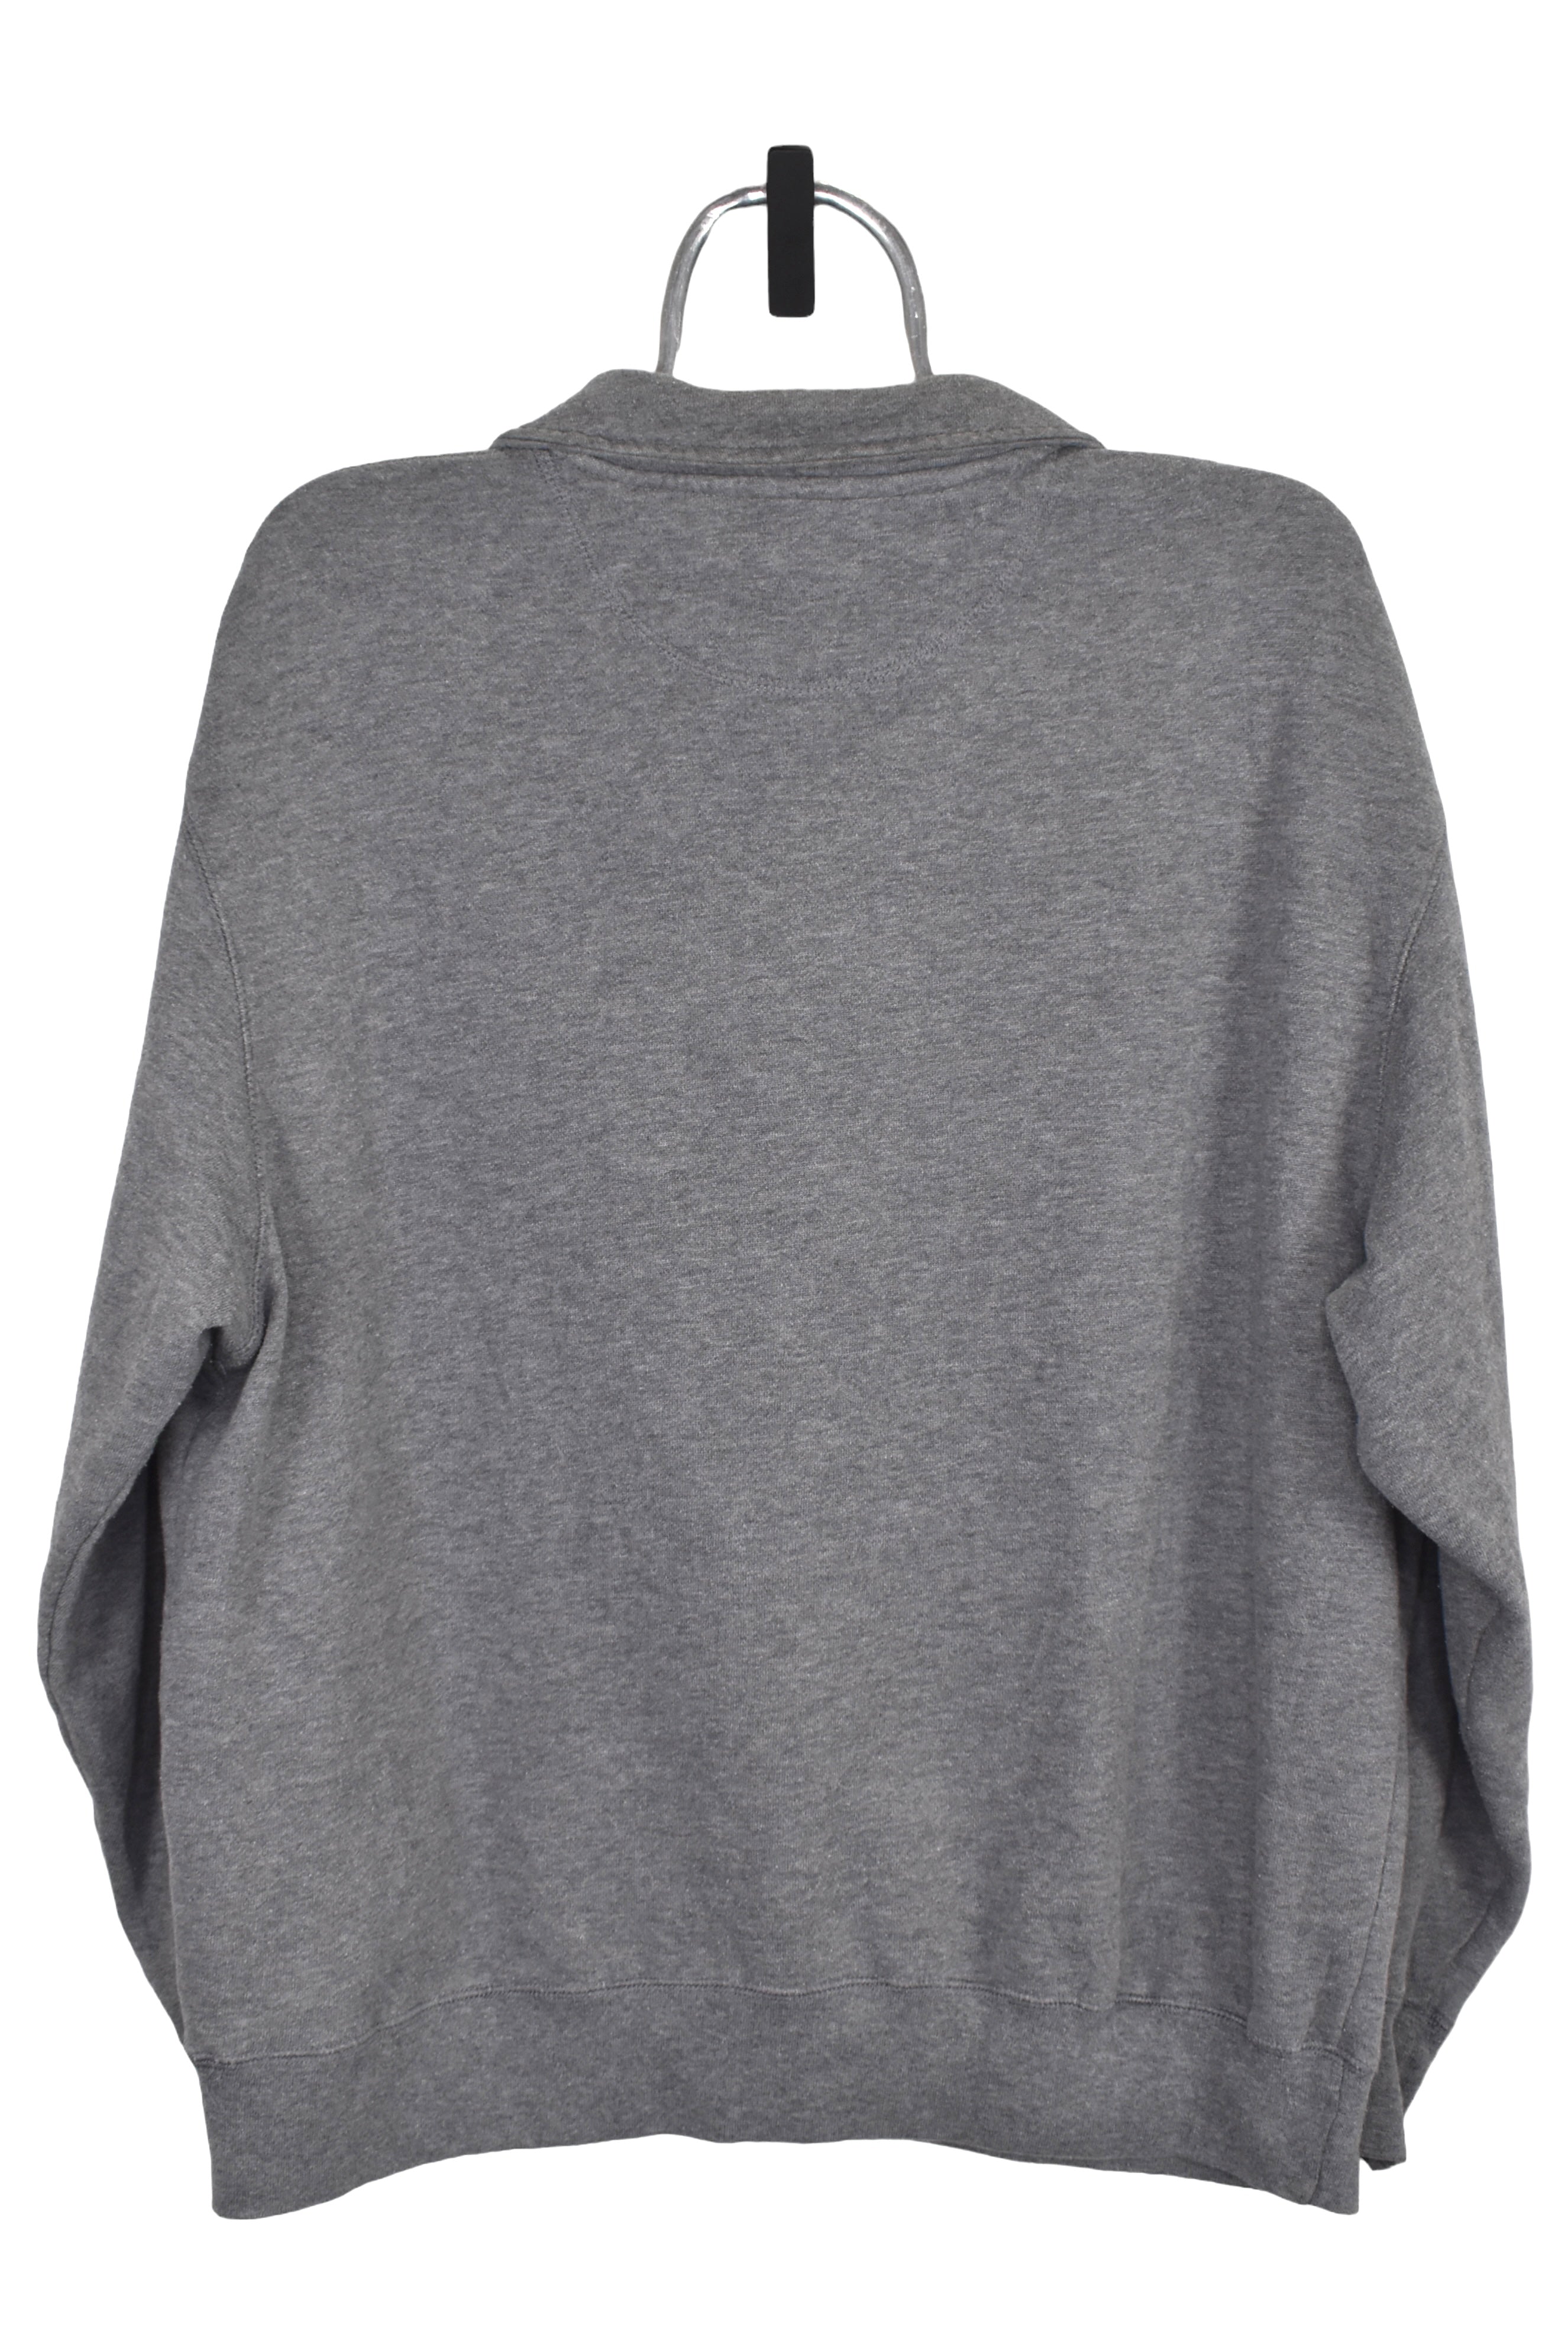 Vintage University of Oregon 1/4 zip (L), grey sweatshirt